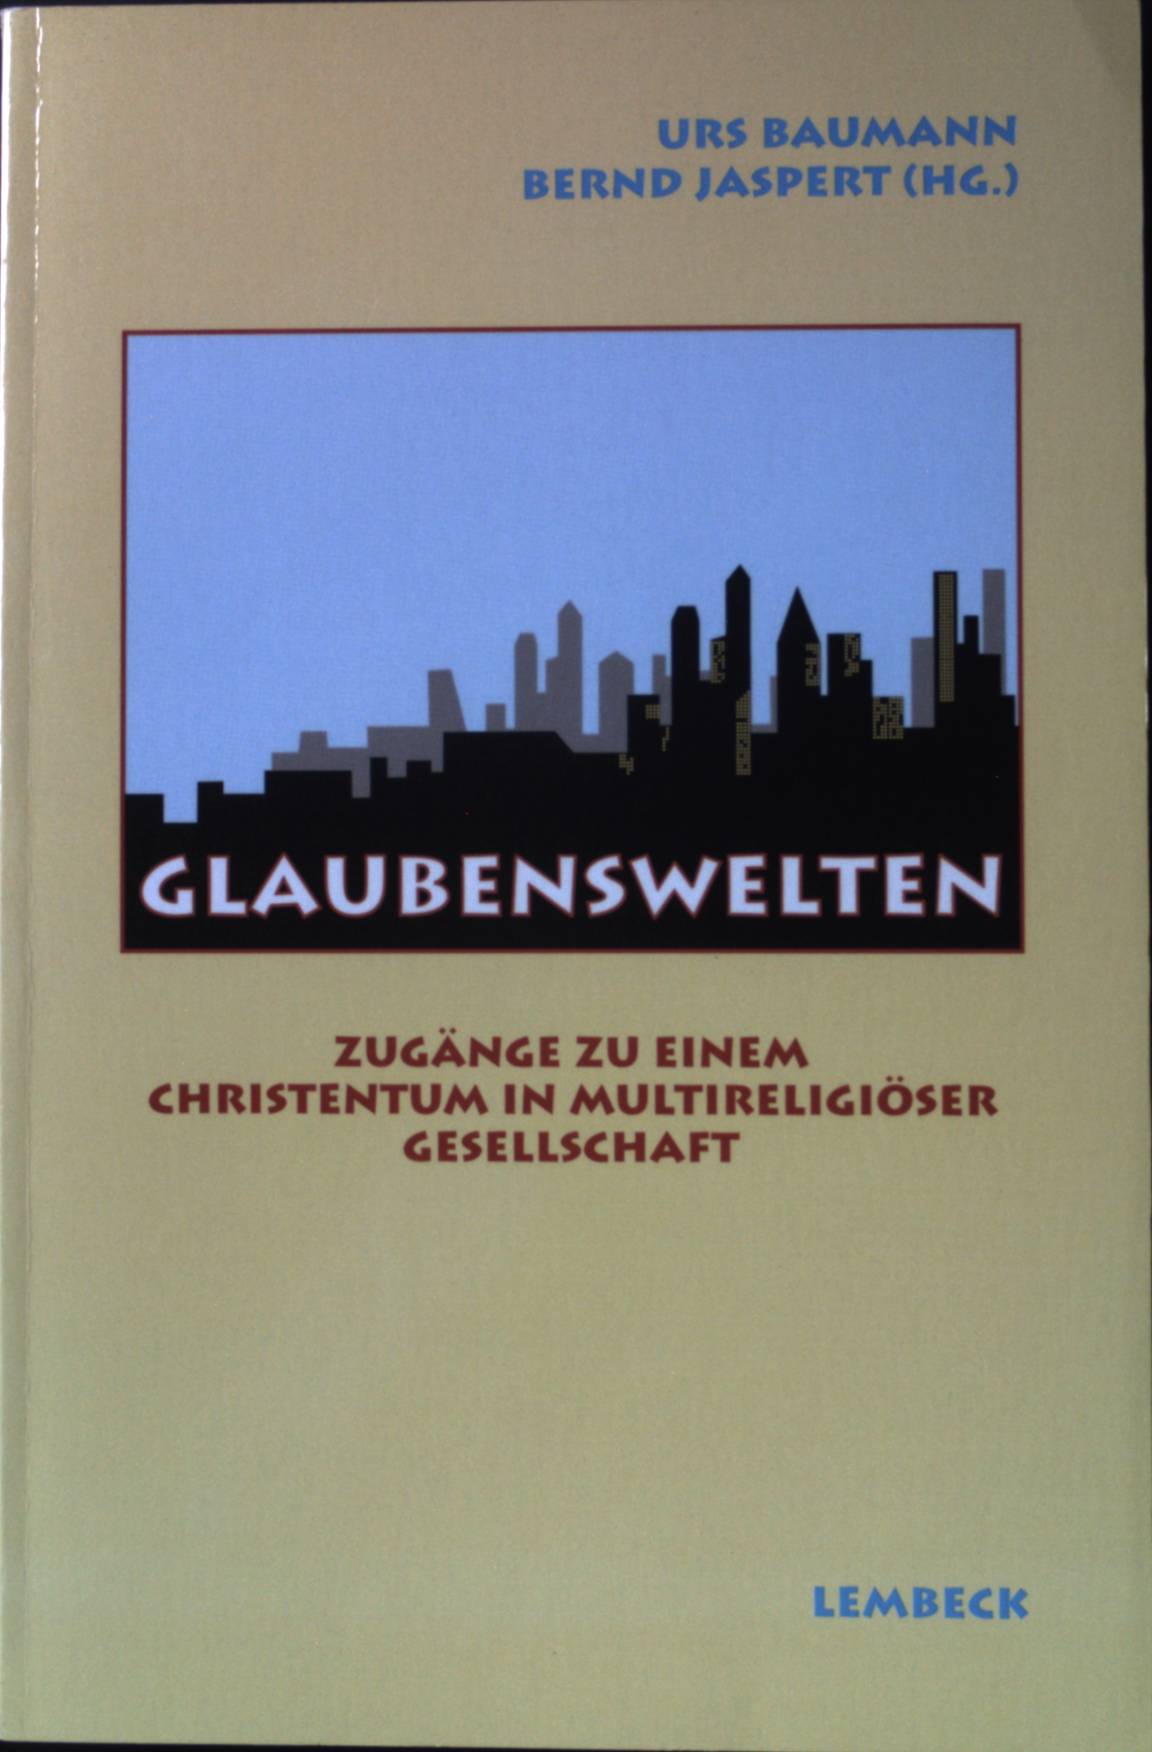 Glaubenswelten : Zugänge zu einem Christentum in multireligiöser Gesellschaft. - Baumann, Urs und Bernd Jaspert